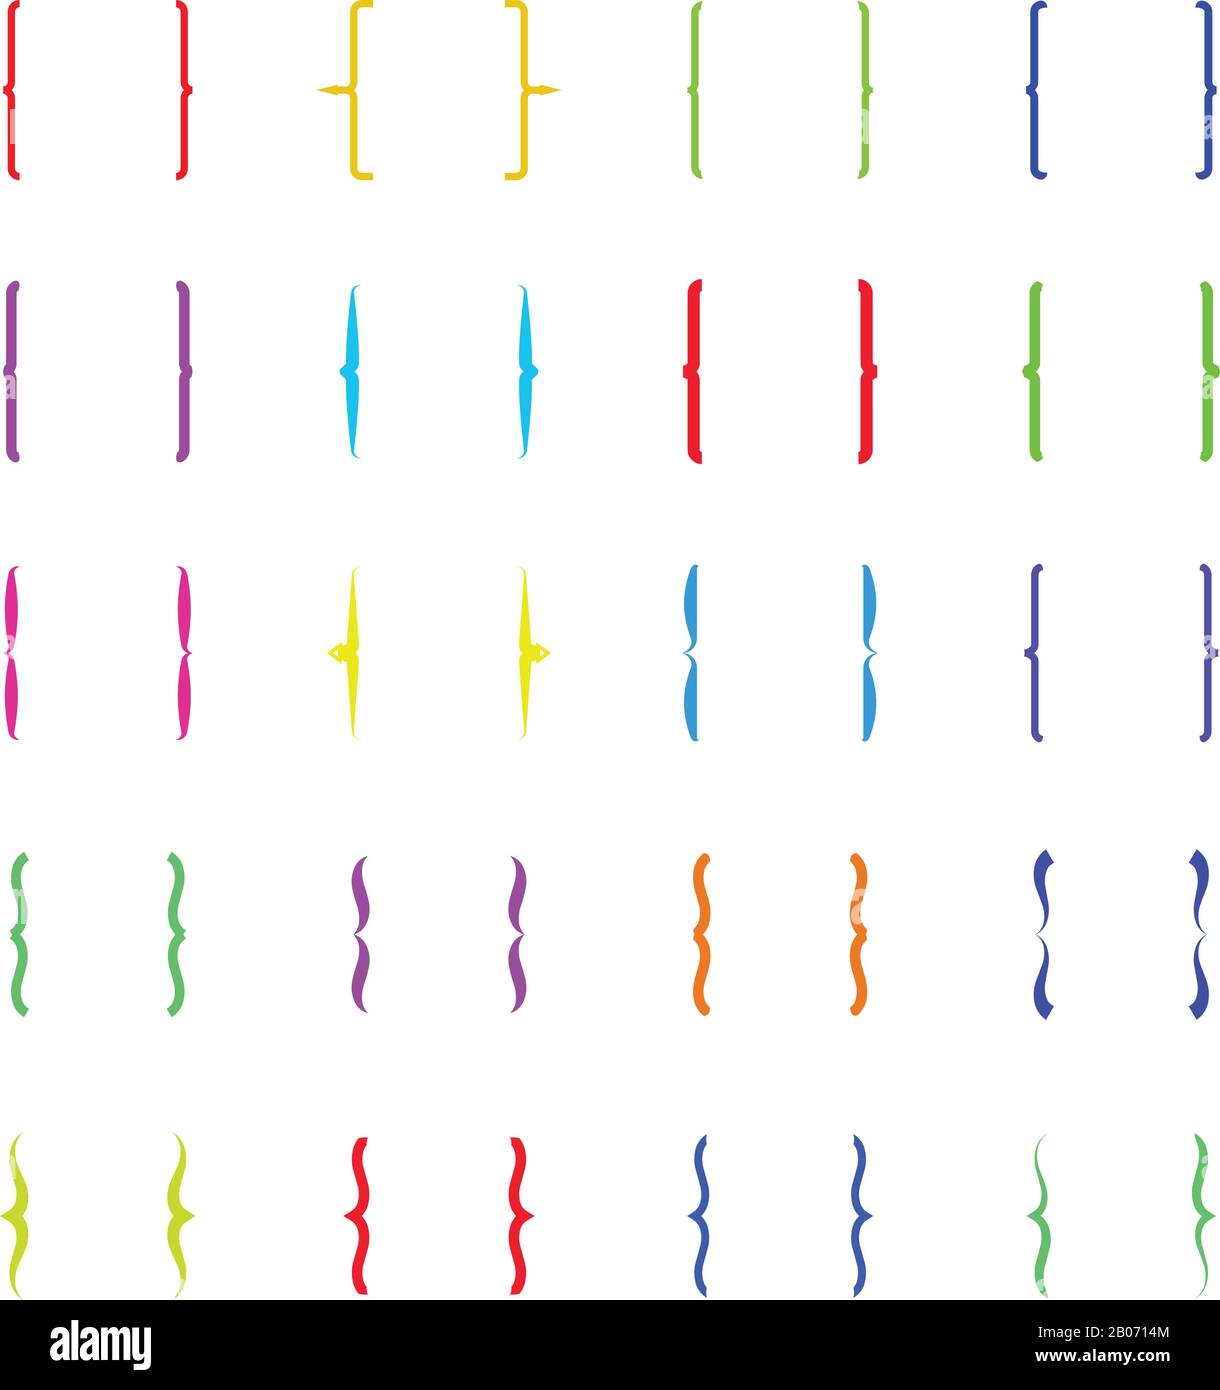 Parentesi graffe multicolore, icone vettoriali per parentesi graffe. Segno tipografico per illustrazione di testo isolata Illustrazione Vettoriale